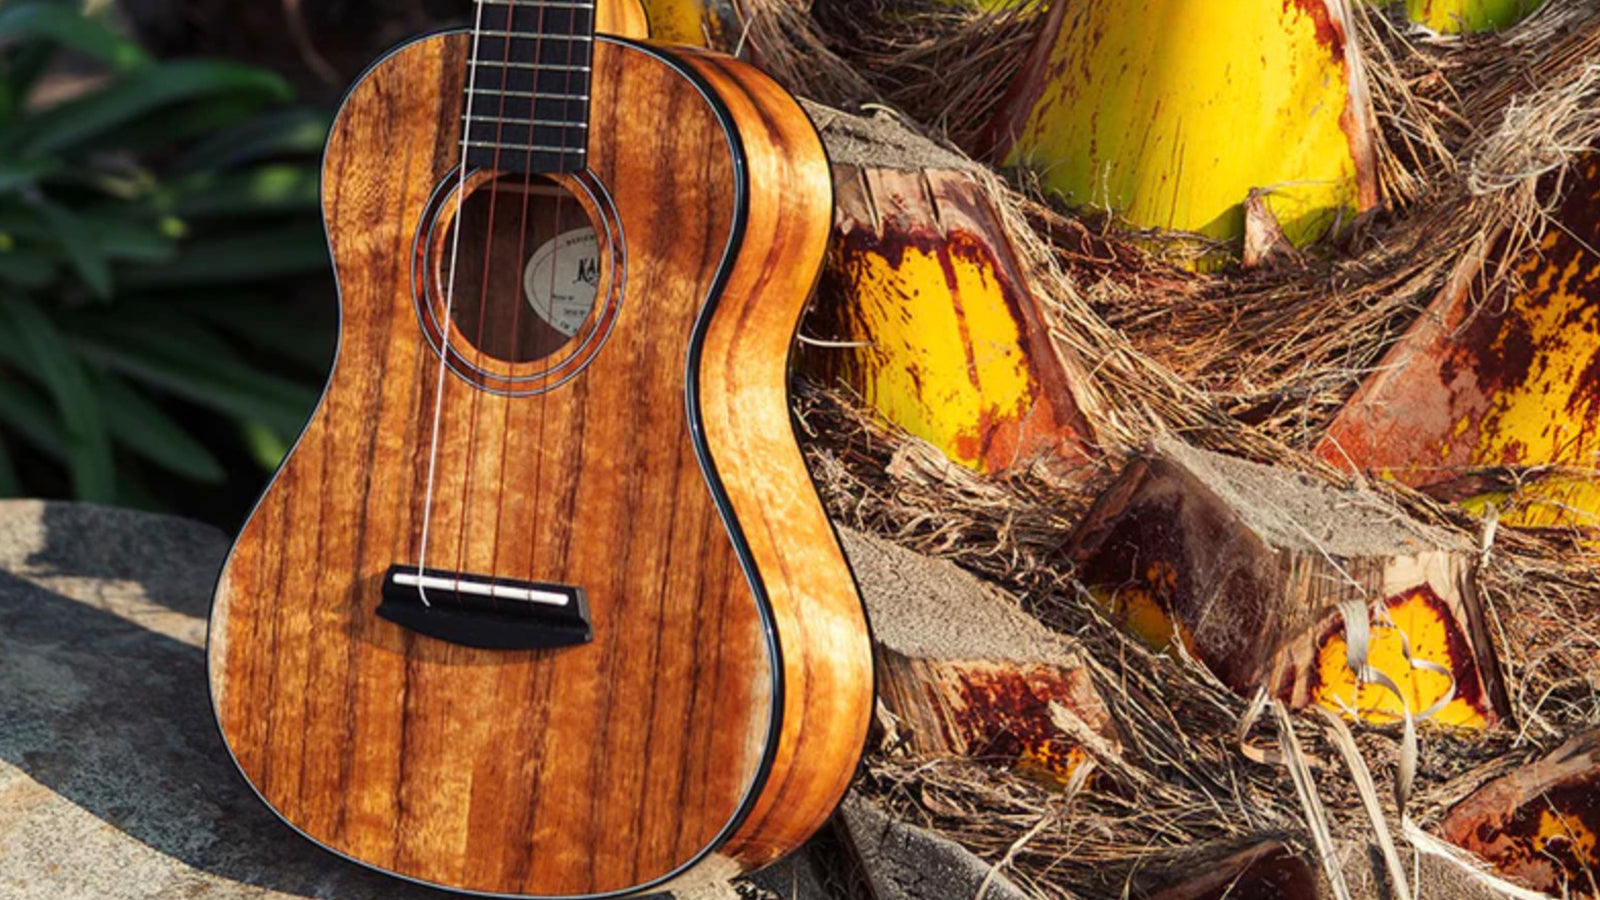 A Kala ukulele leaning on a palm tree